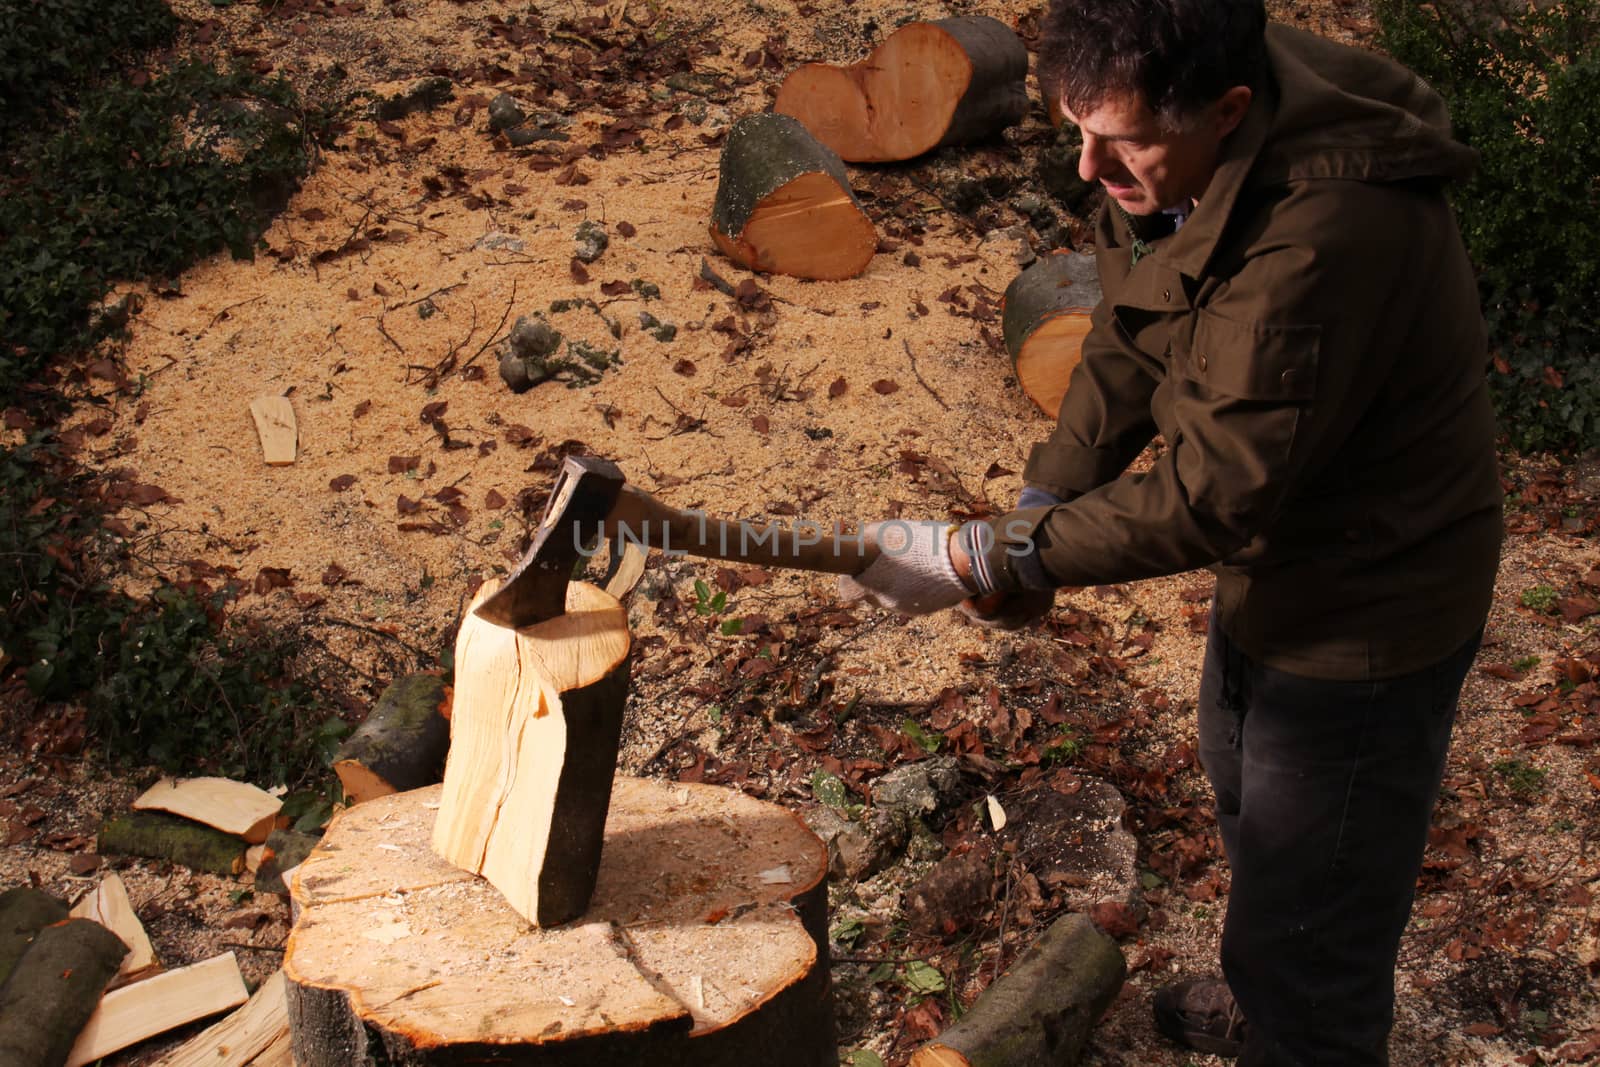 Chopping wood by Aarstudio